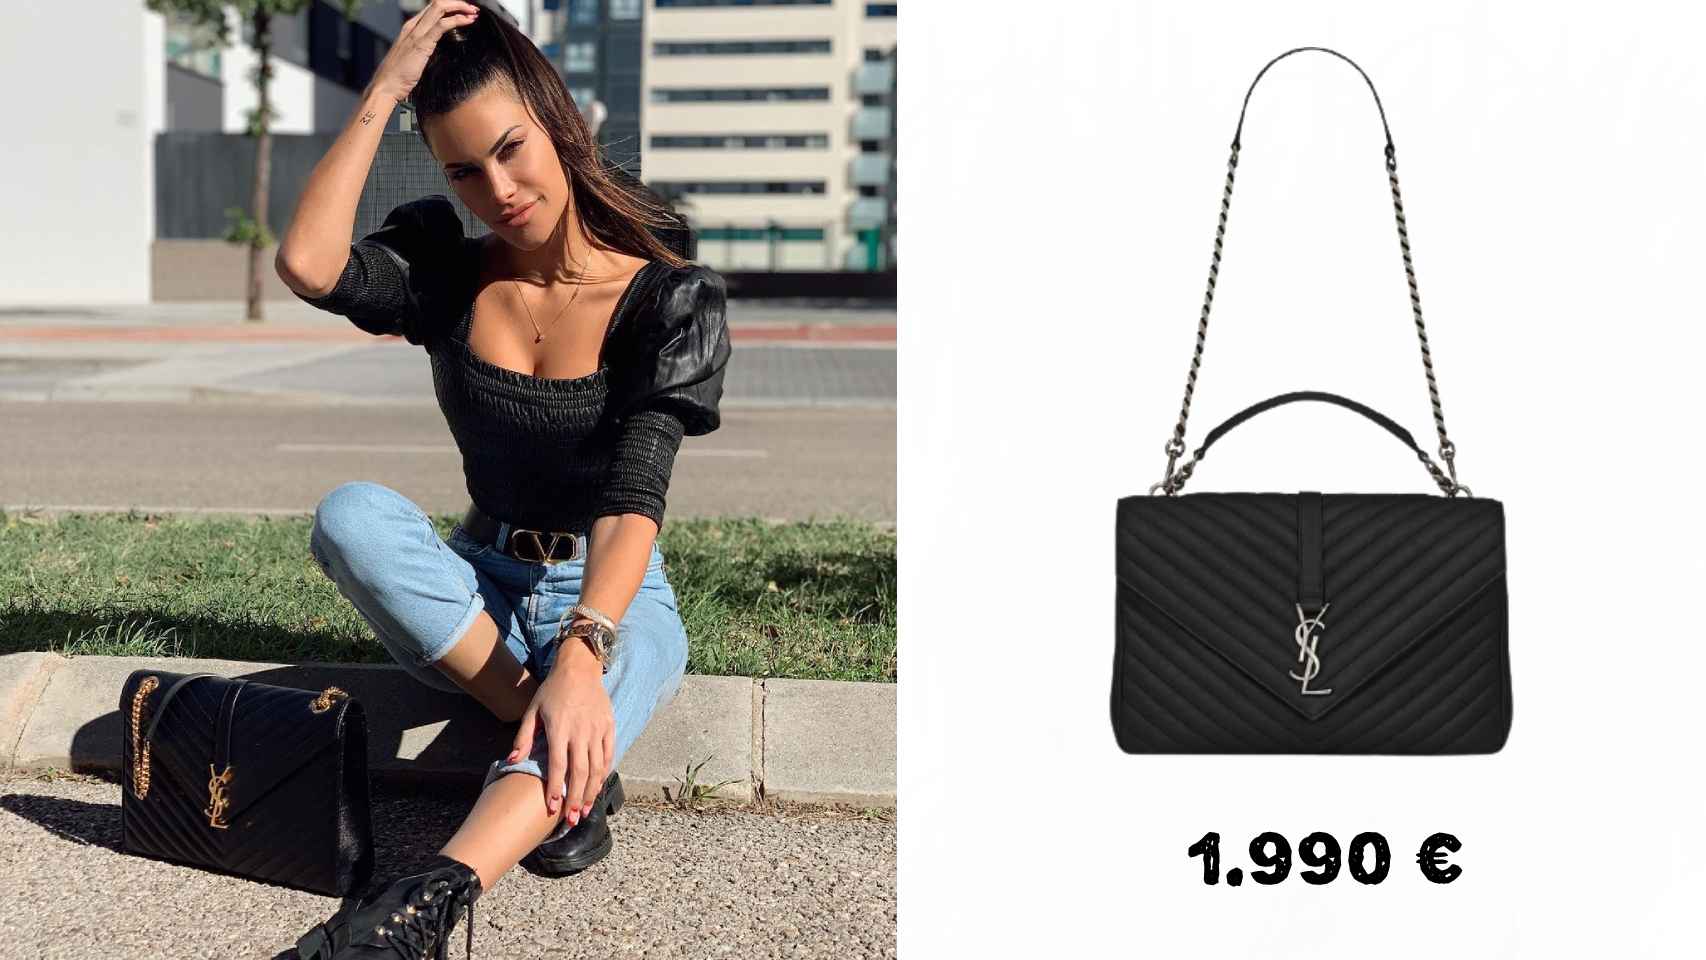 Carla con un bolso de Yves Saint Laurent de 1.990 euros.